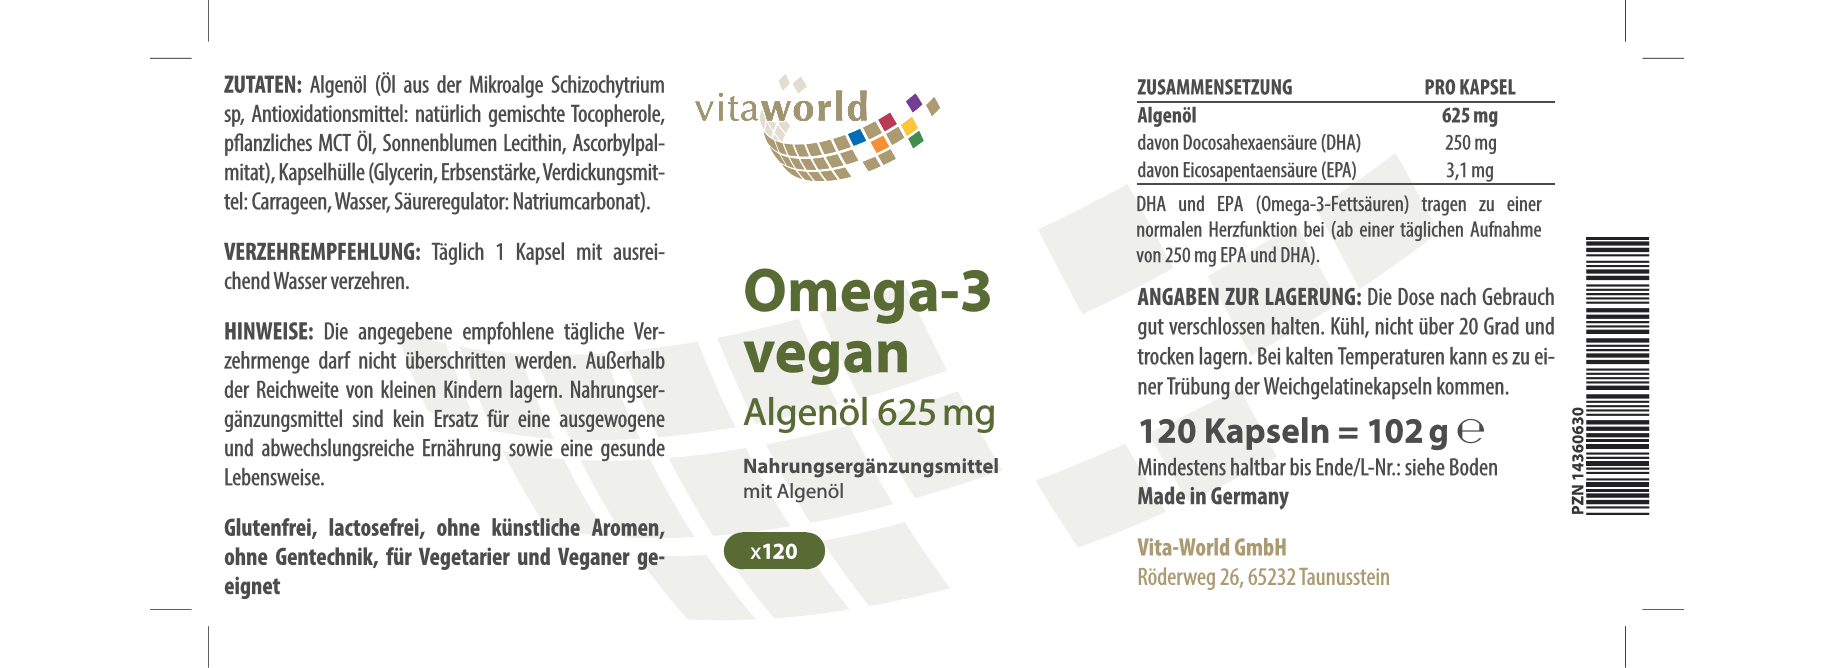 Omega 3 vegan (120 Kps)